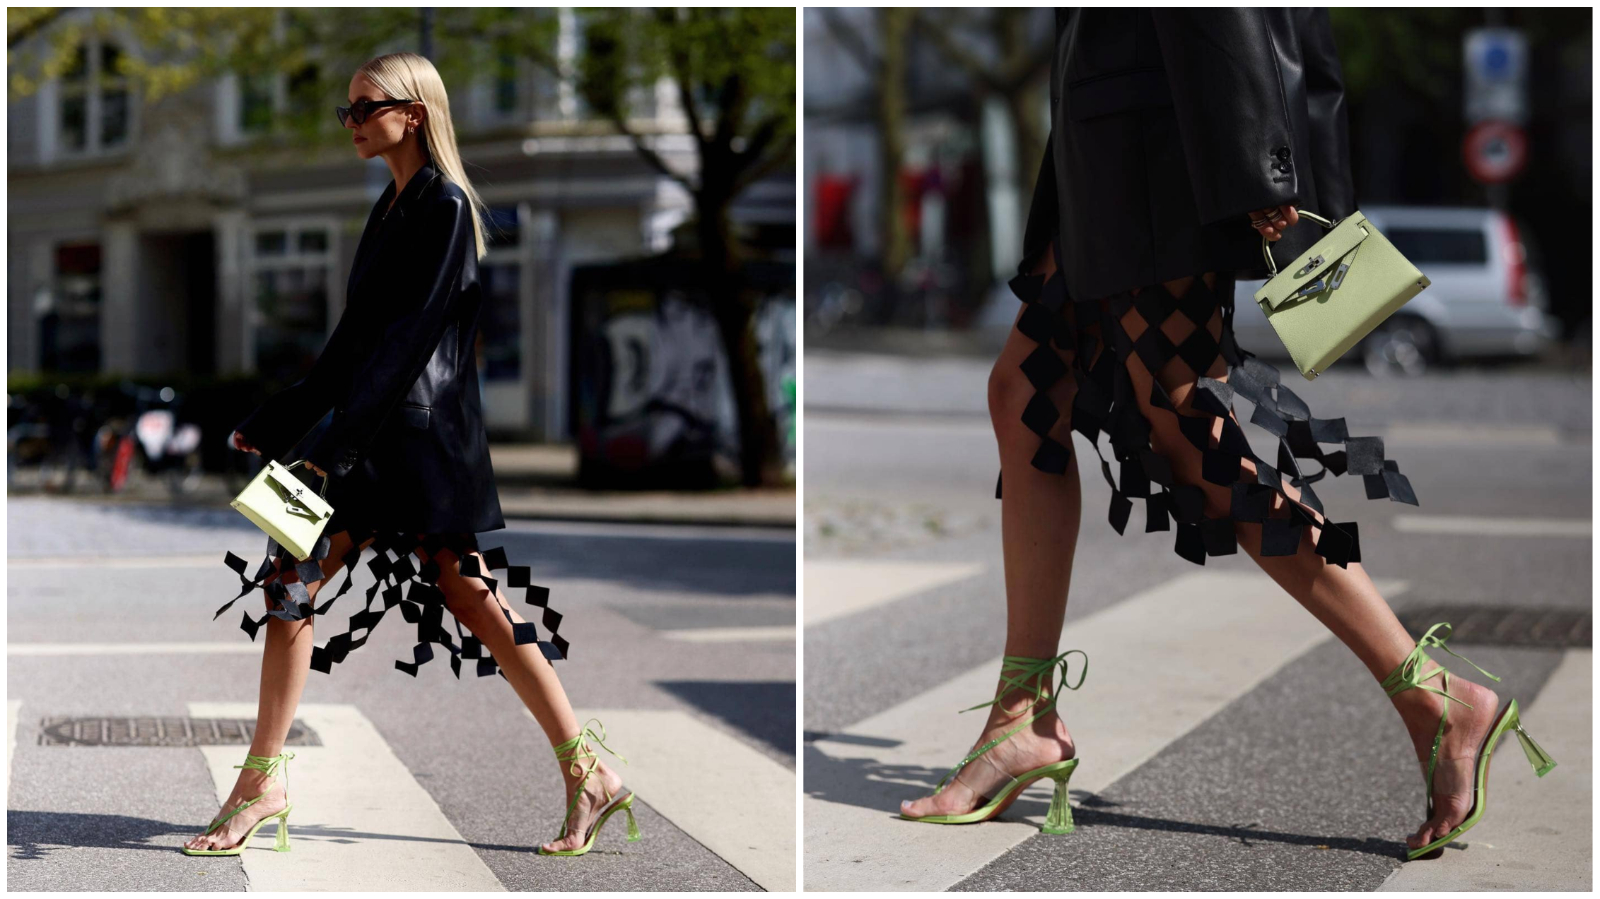 Street style inspiracija: Influencerica Leonie Hanne nosi suknju hrvatske dizajnerice